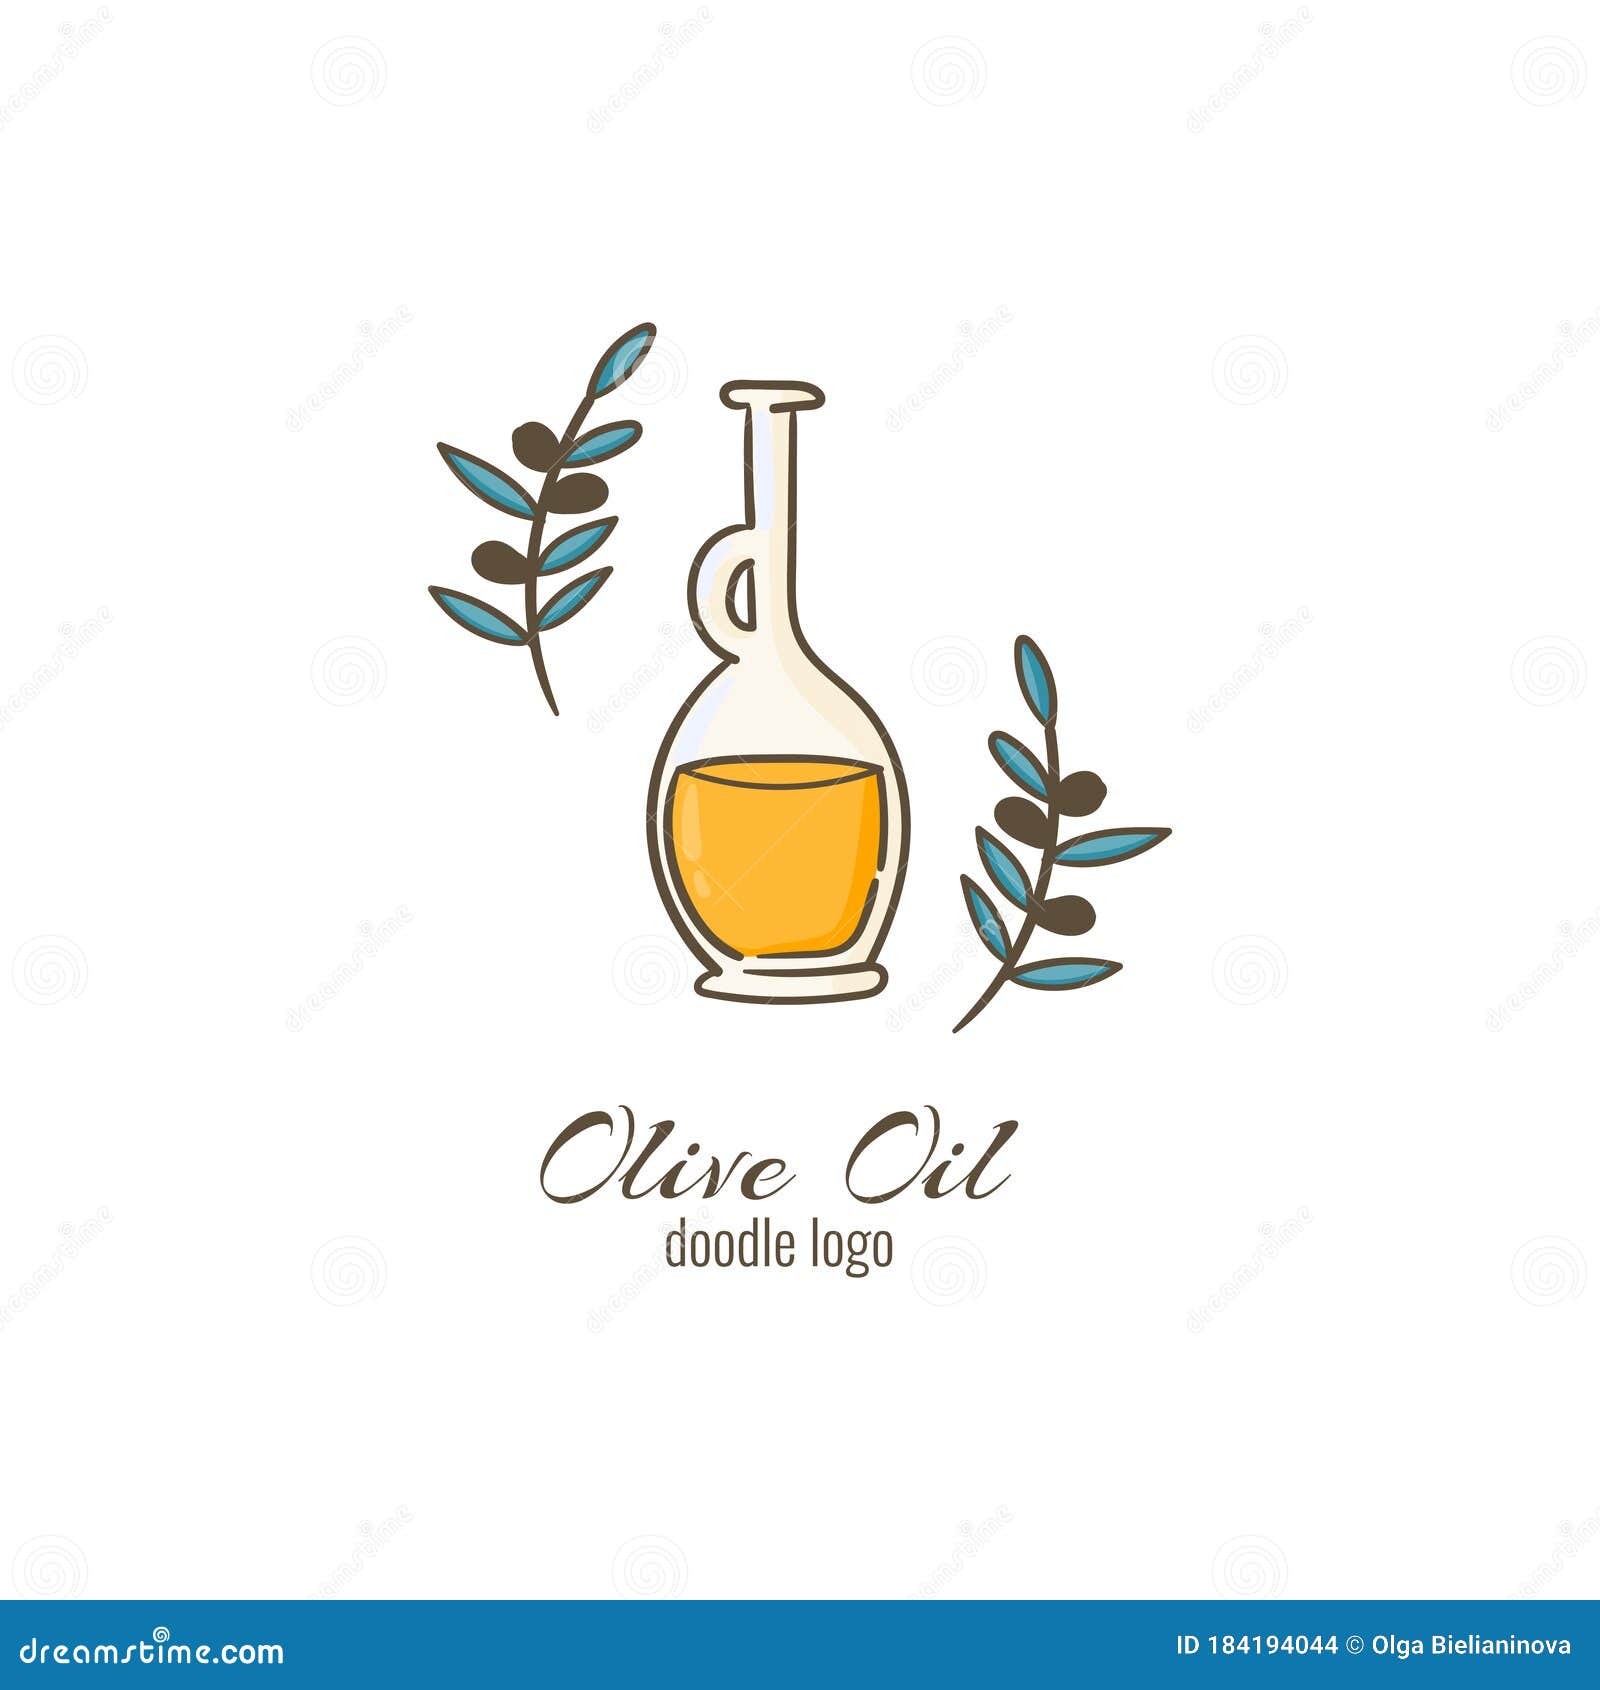 Olive Oil Doodle Cartoon Logo. Hand Drawn Bottle with Olive Oil and Olive  Branches Stock Illustration - Illustration of design, emblem: 184194044